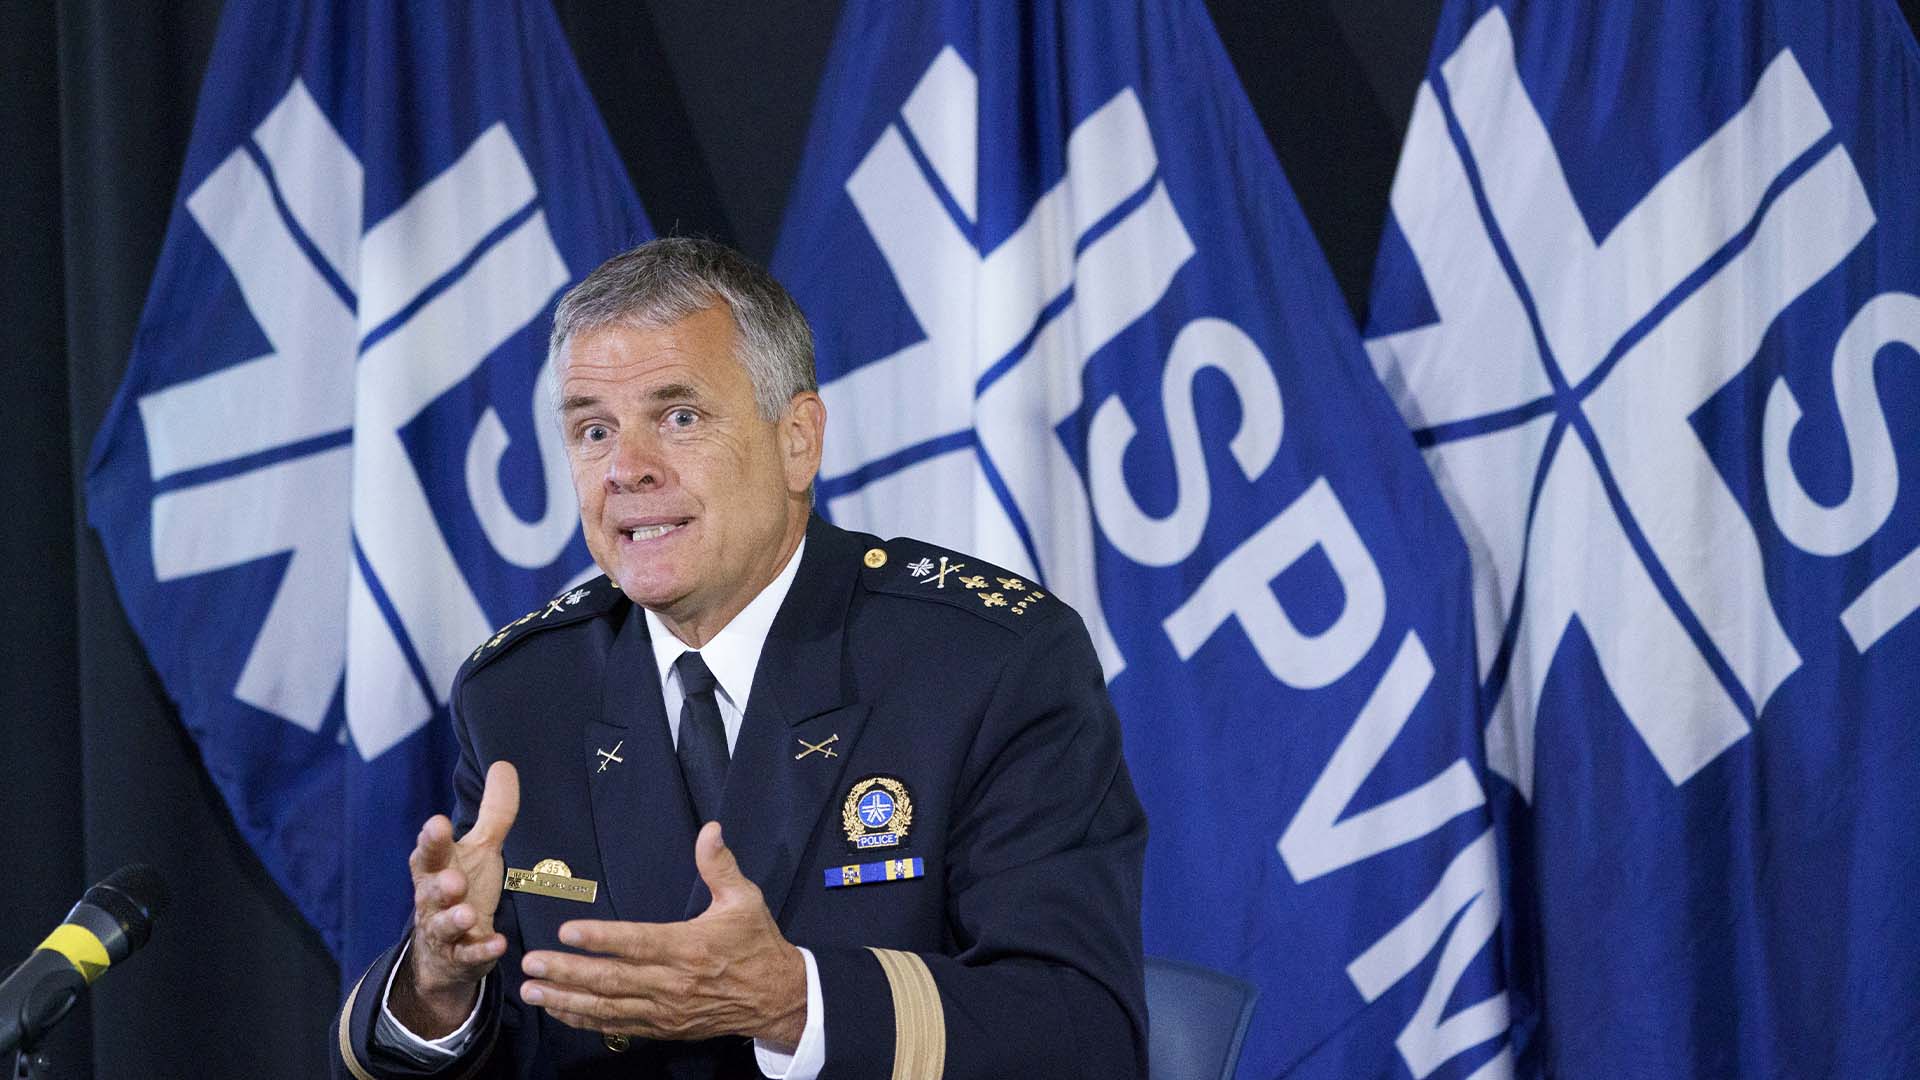  Le chef de la police de Montréal, Sylvain Caron, répond à une question lors d'une conférence de presse à Montréal le mercredi 8 juillet 2020.